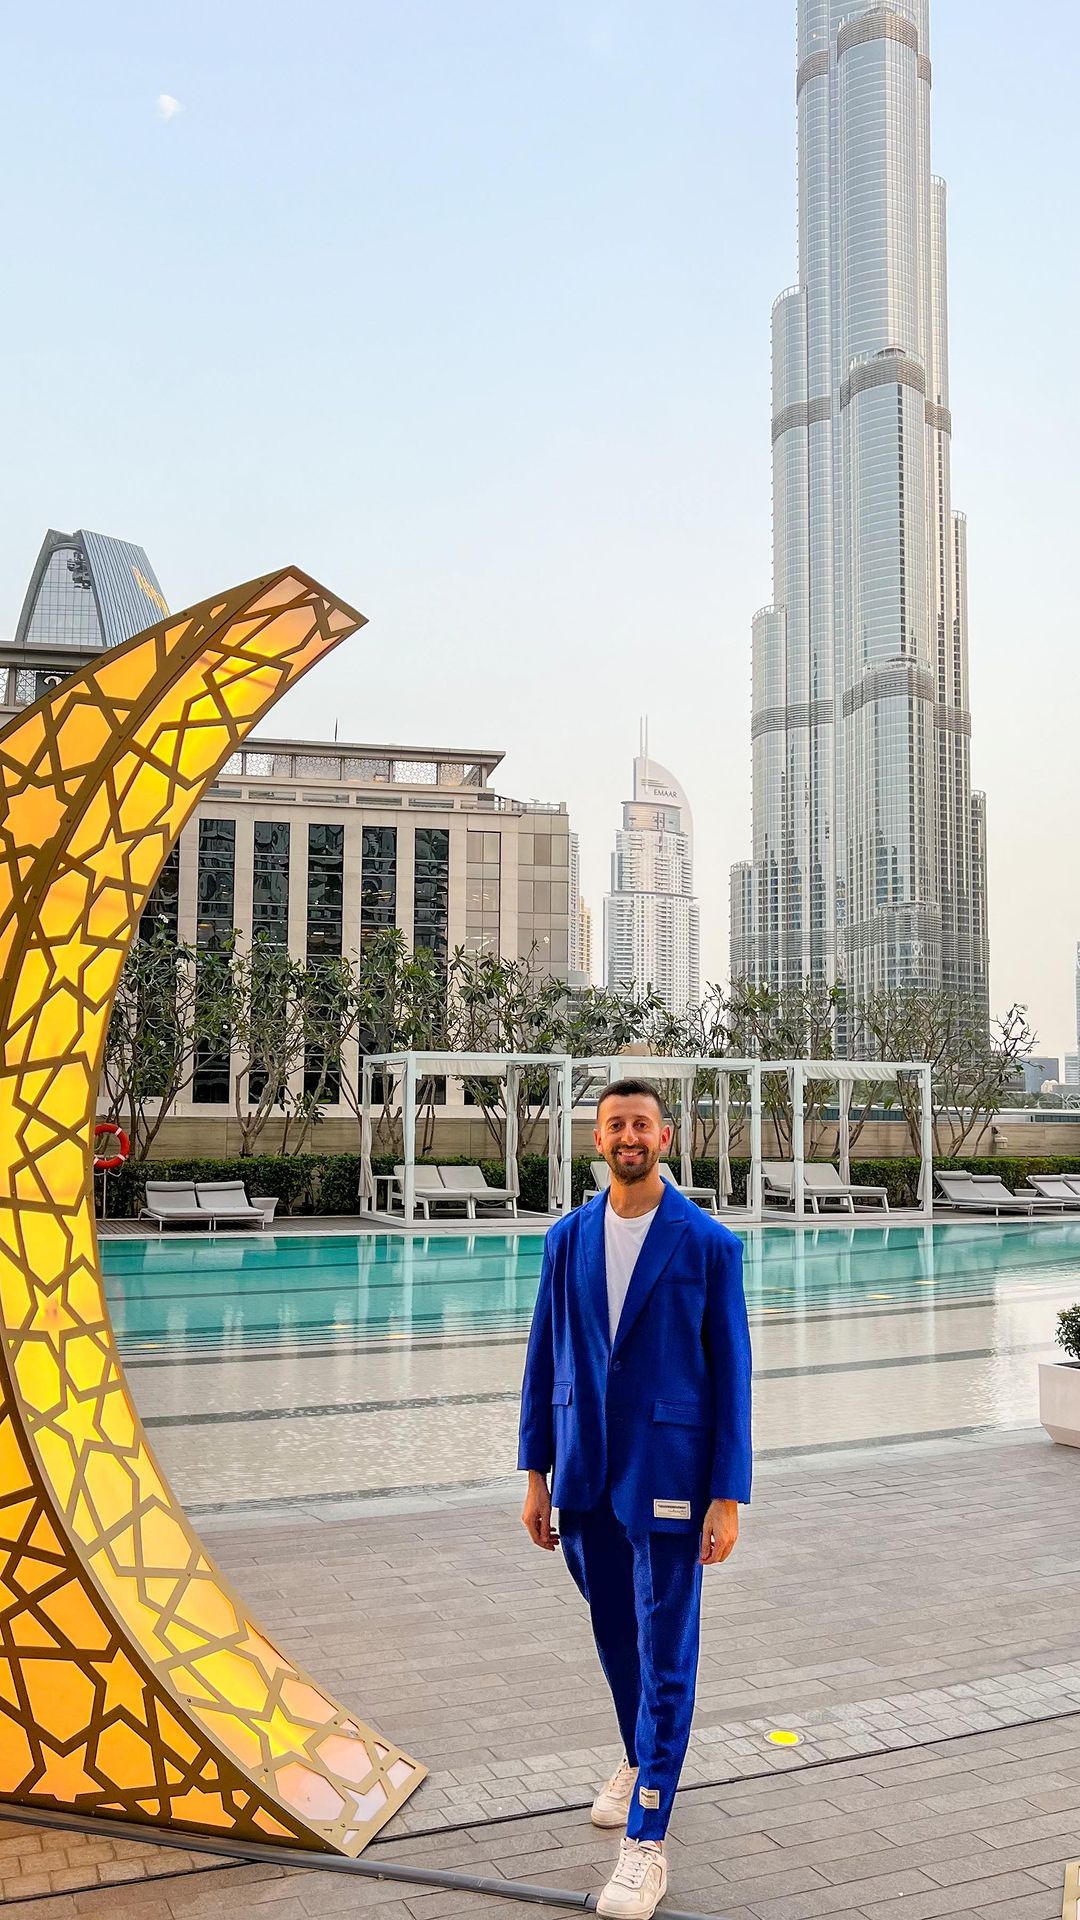 🌙✨ افكار للافطار في #دبي 🌙✨ 

📍 @addressskyview 

اليوم تجربة الافطار كانت في فندق ادريس سكاي فيو، حبيت الفطور بوفيه مرتب و الاكل لذيذ، مع اطلالة مباشرة على برج خليفة.

